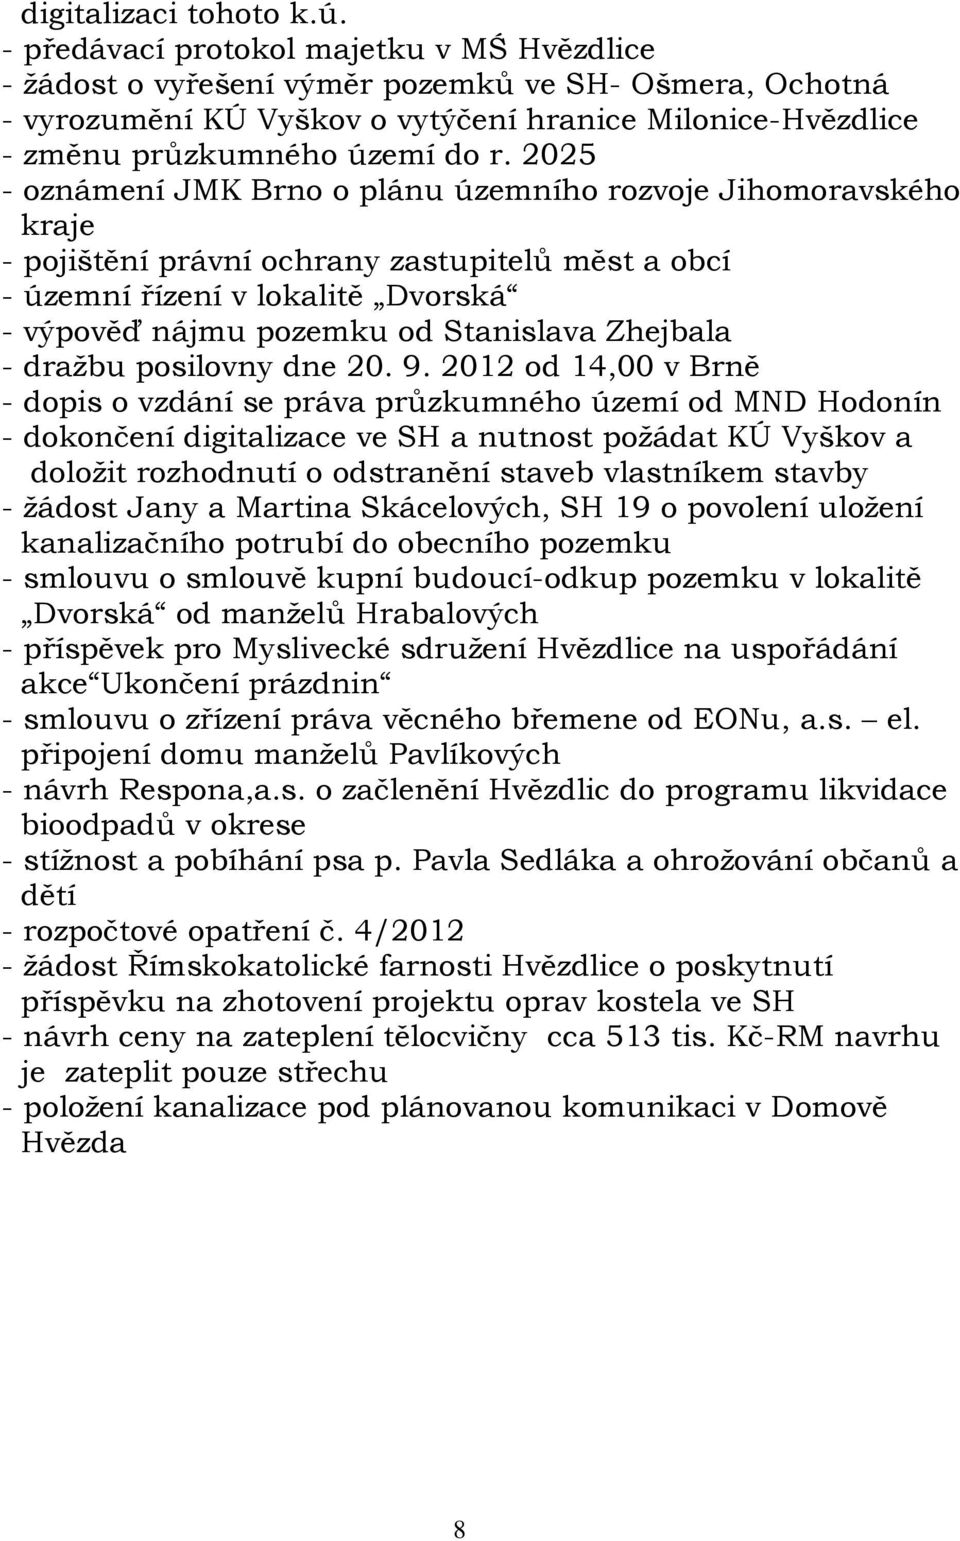 2025 - oznámení JMK Brno o plánu územního rozvoje Jihomoravského kraje - pojištění právní ochrany zastupitelů měst a obcí - územní řízení v lokalitě Dvorská - výpověď nájmu pozemku od Stanislava